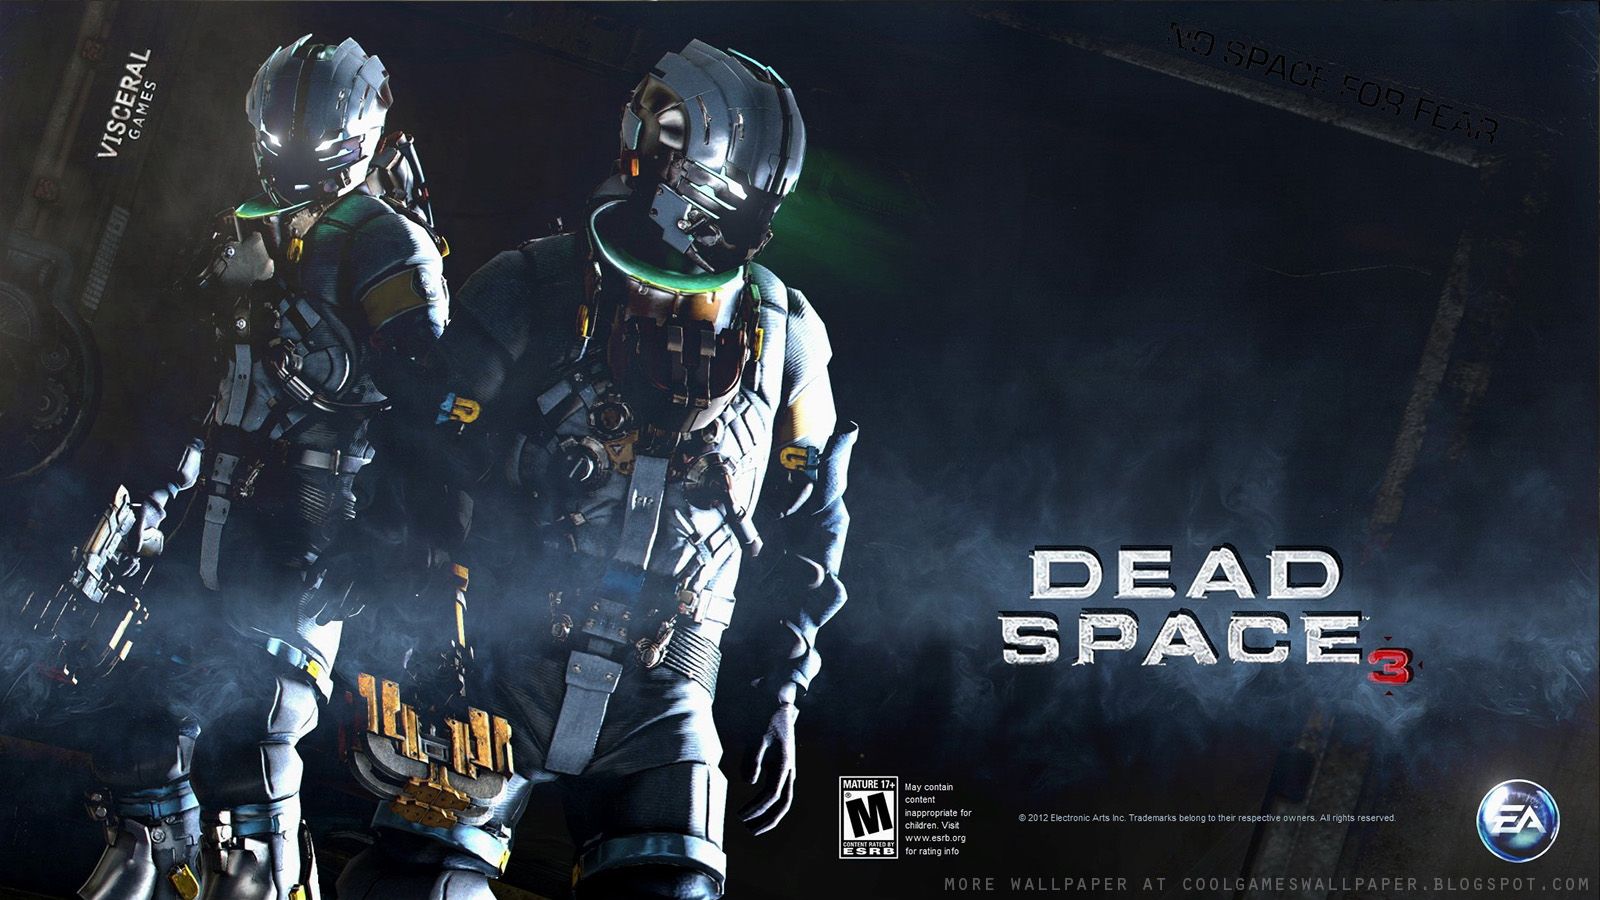 Dead Space 3 Wallpapers 4k Hd Dead Space 3 Backgrounds On Wallpaperbat